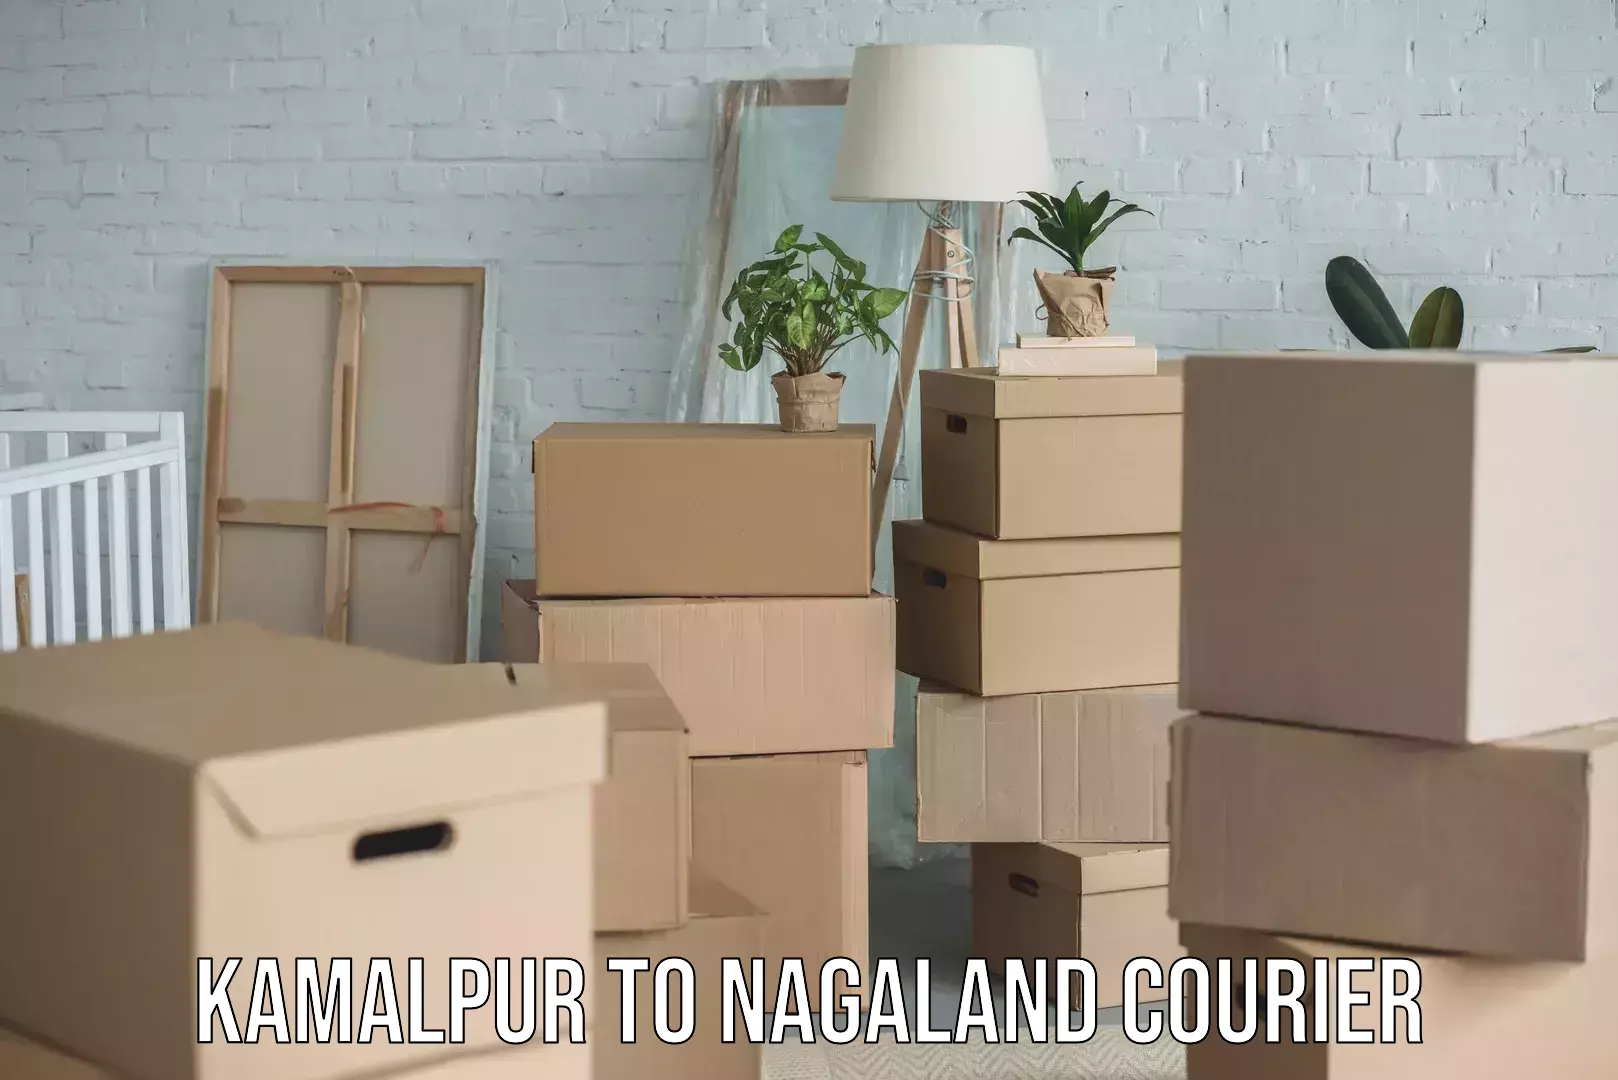 Customer-centric shipping Kamalpur to Nagaland